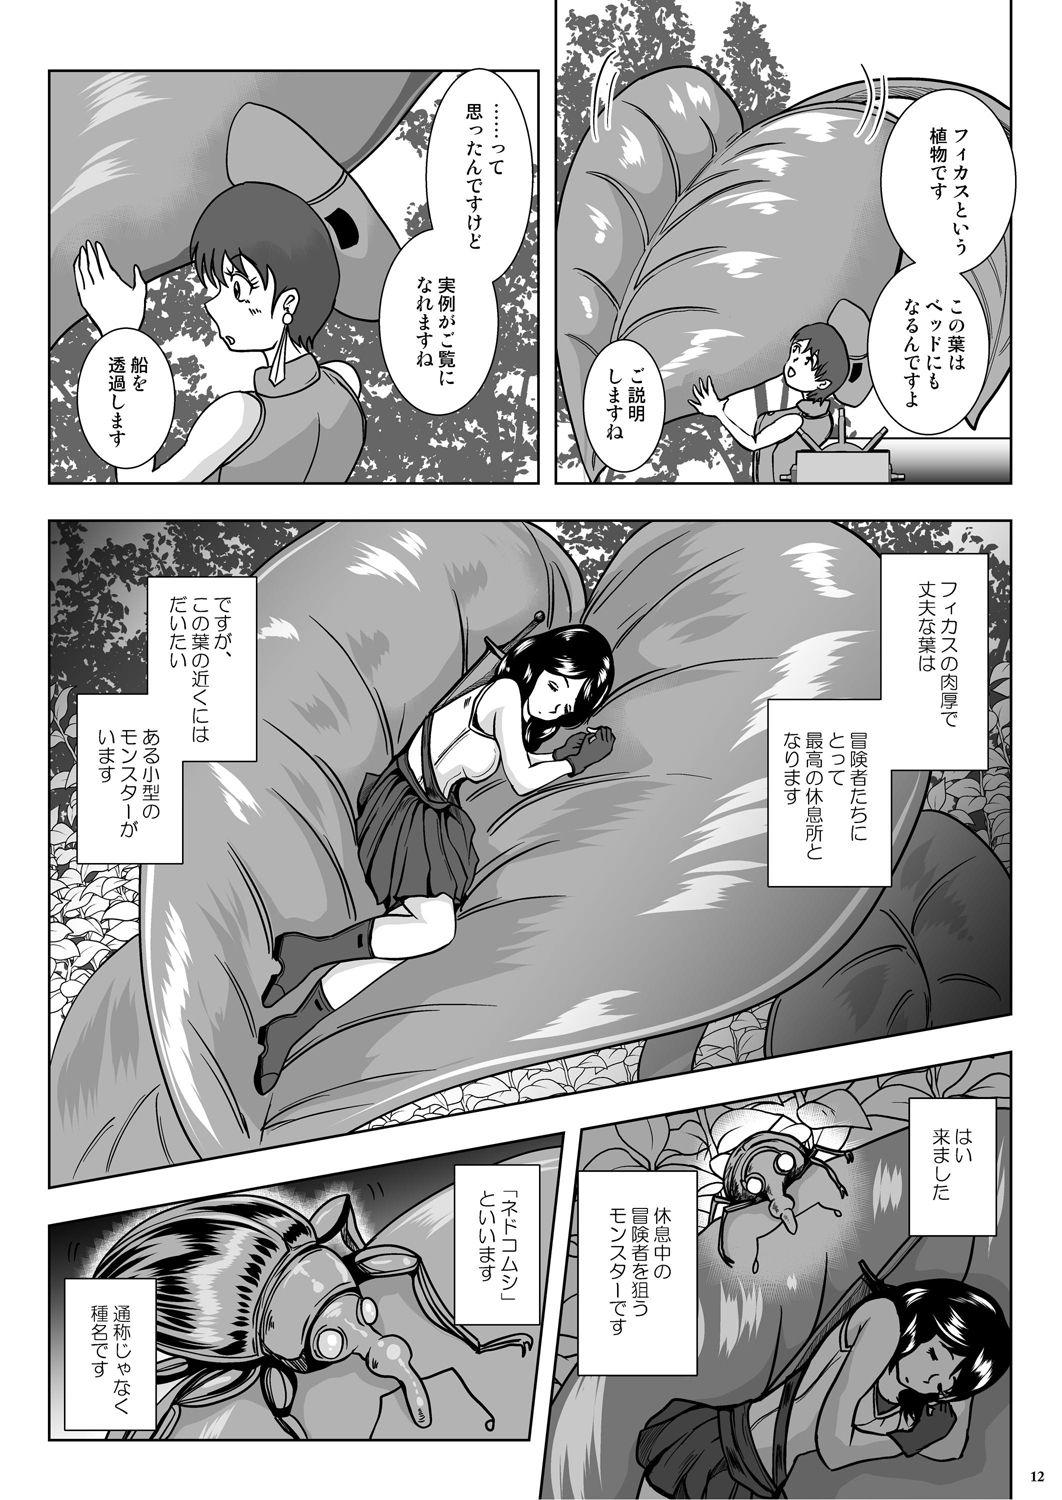 Sloppy Go To Larvataurs #02 "Hokaku Chuunyuu Nakadashi Mushi no Miyako" Piss - Page 12